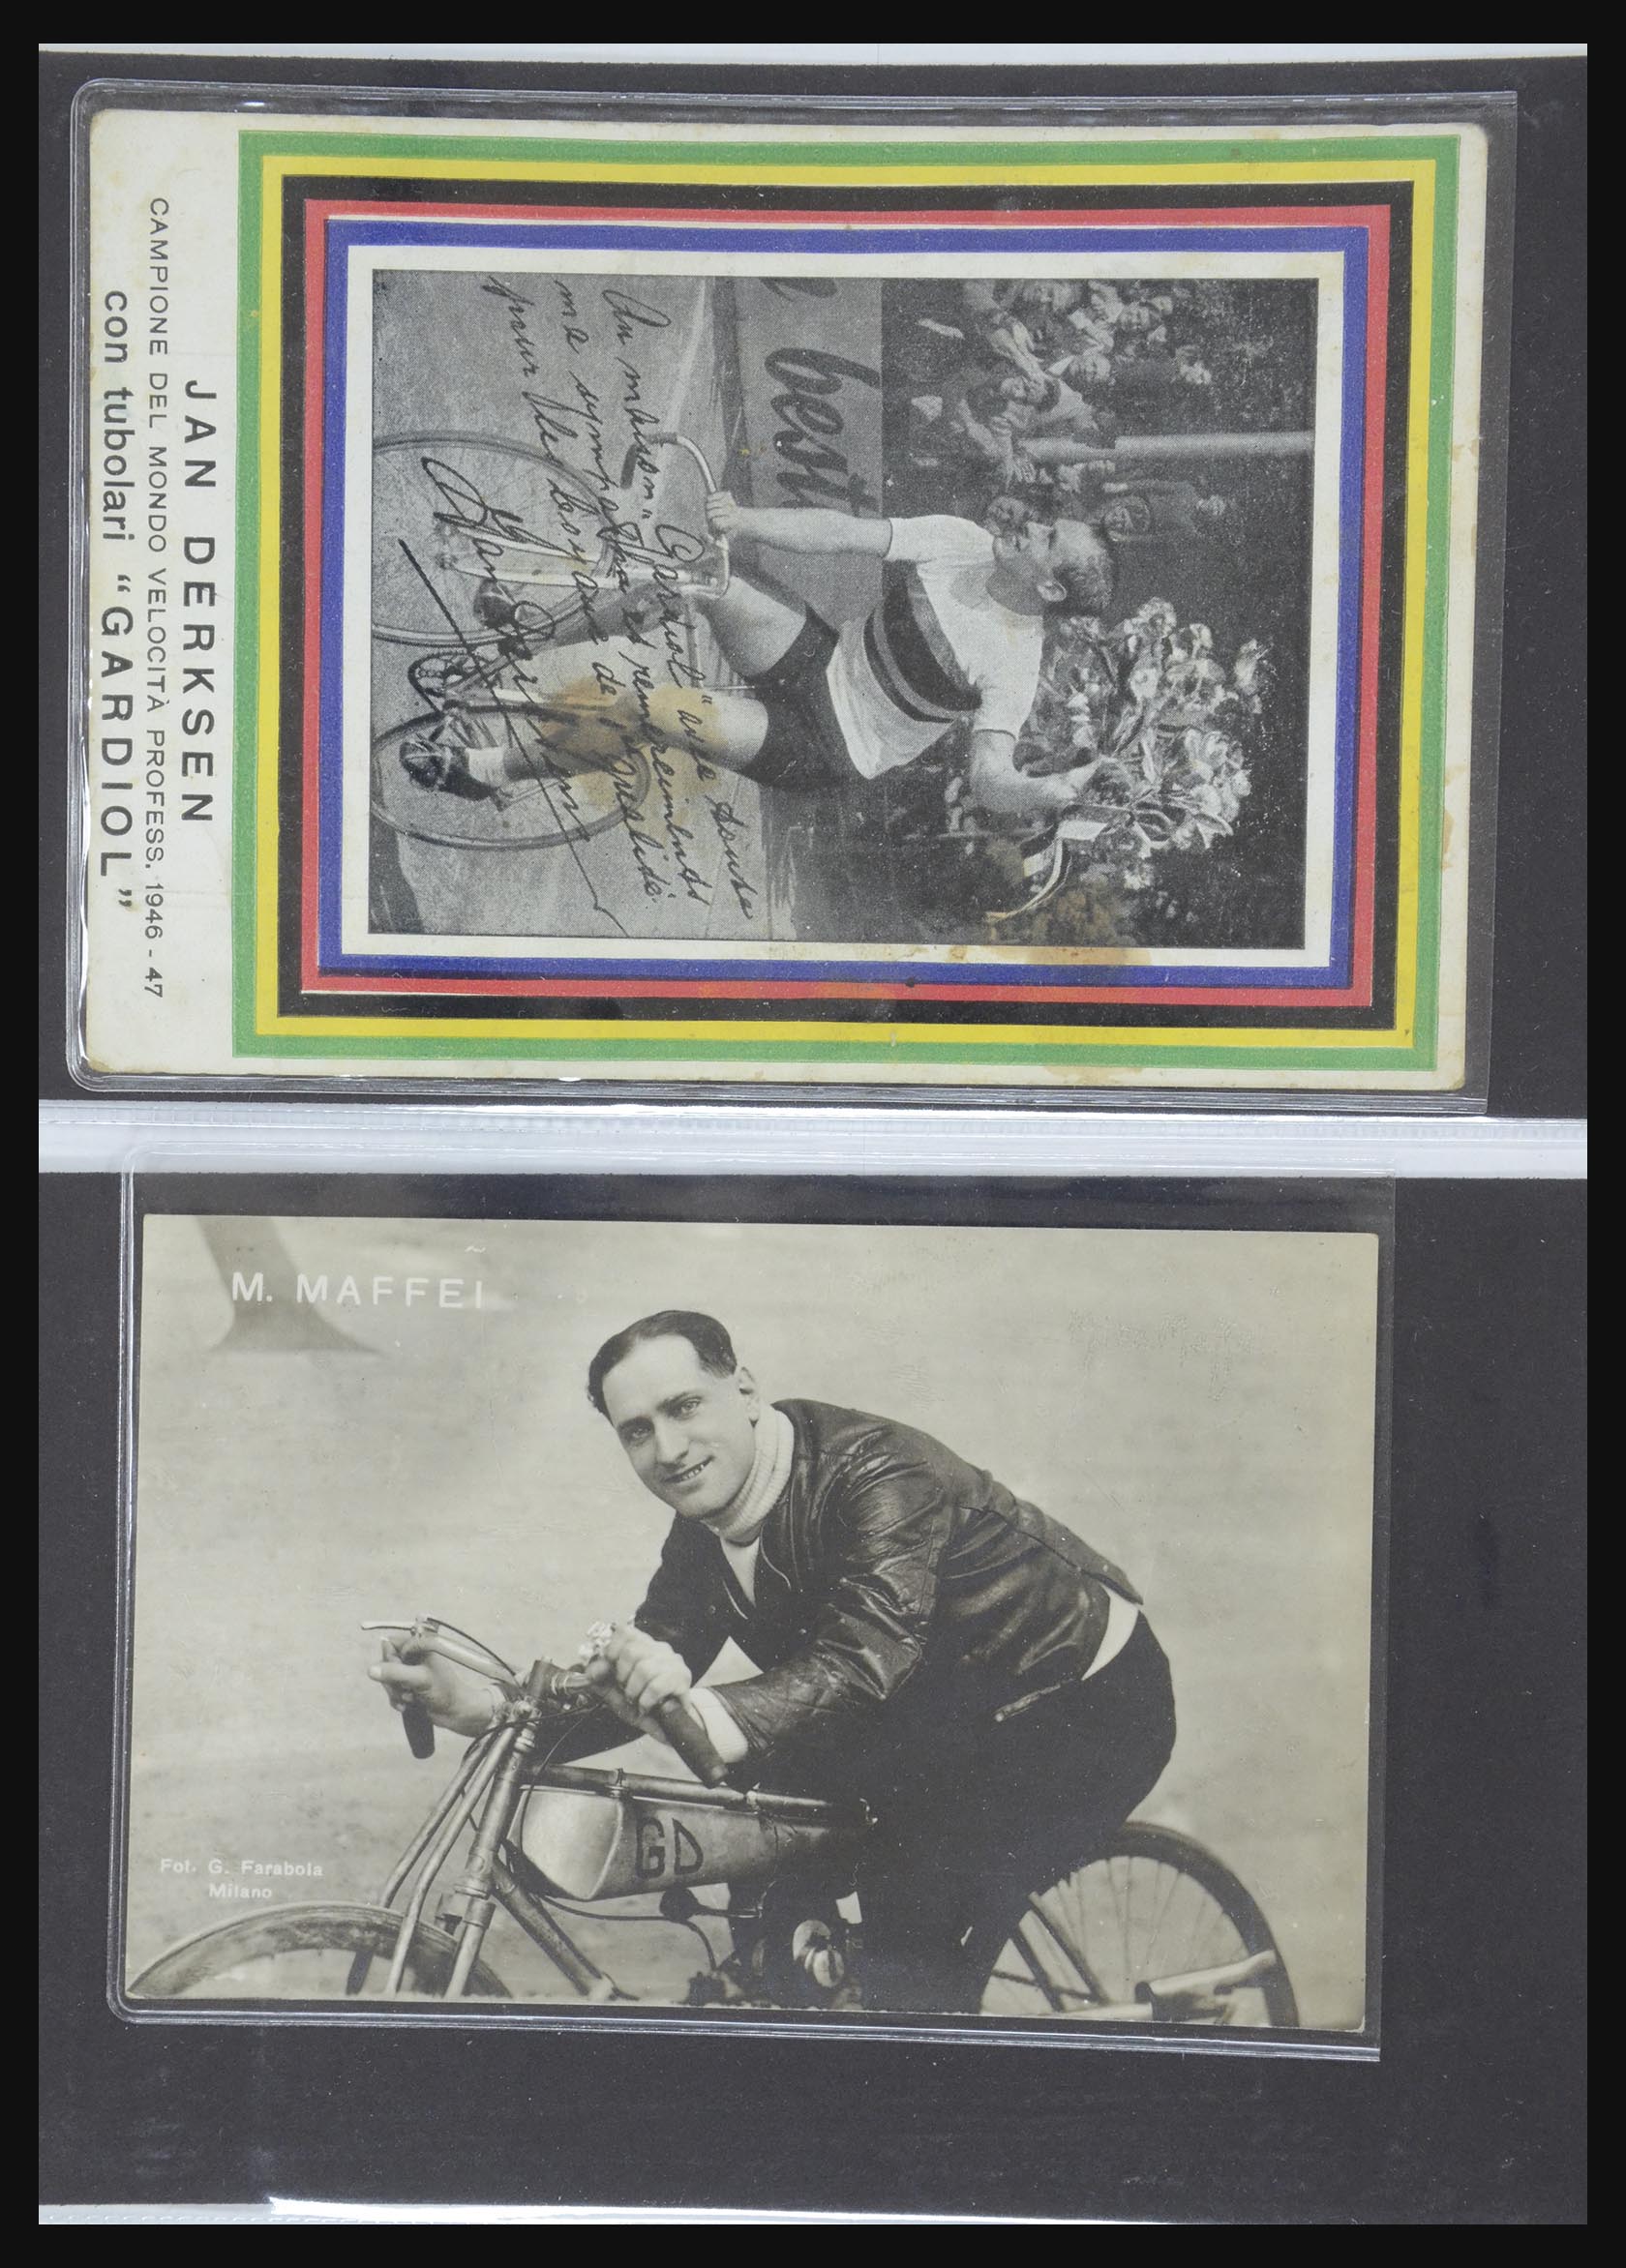 32246 017 - 32246 Italy football, cycling, sports 1900-1988.